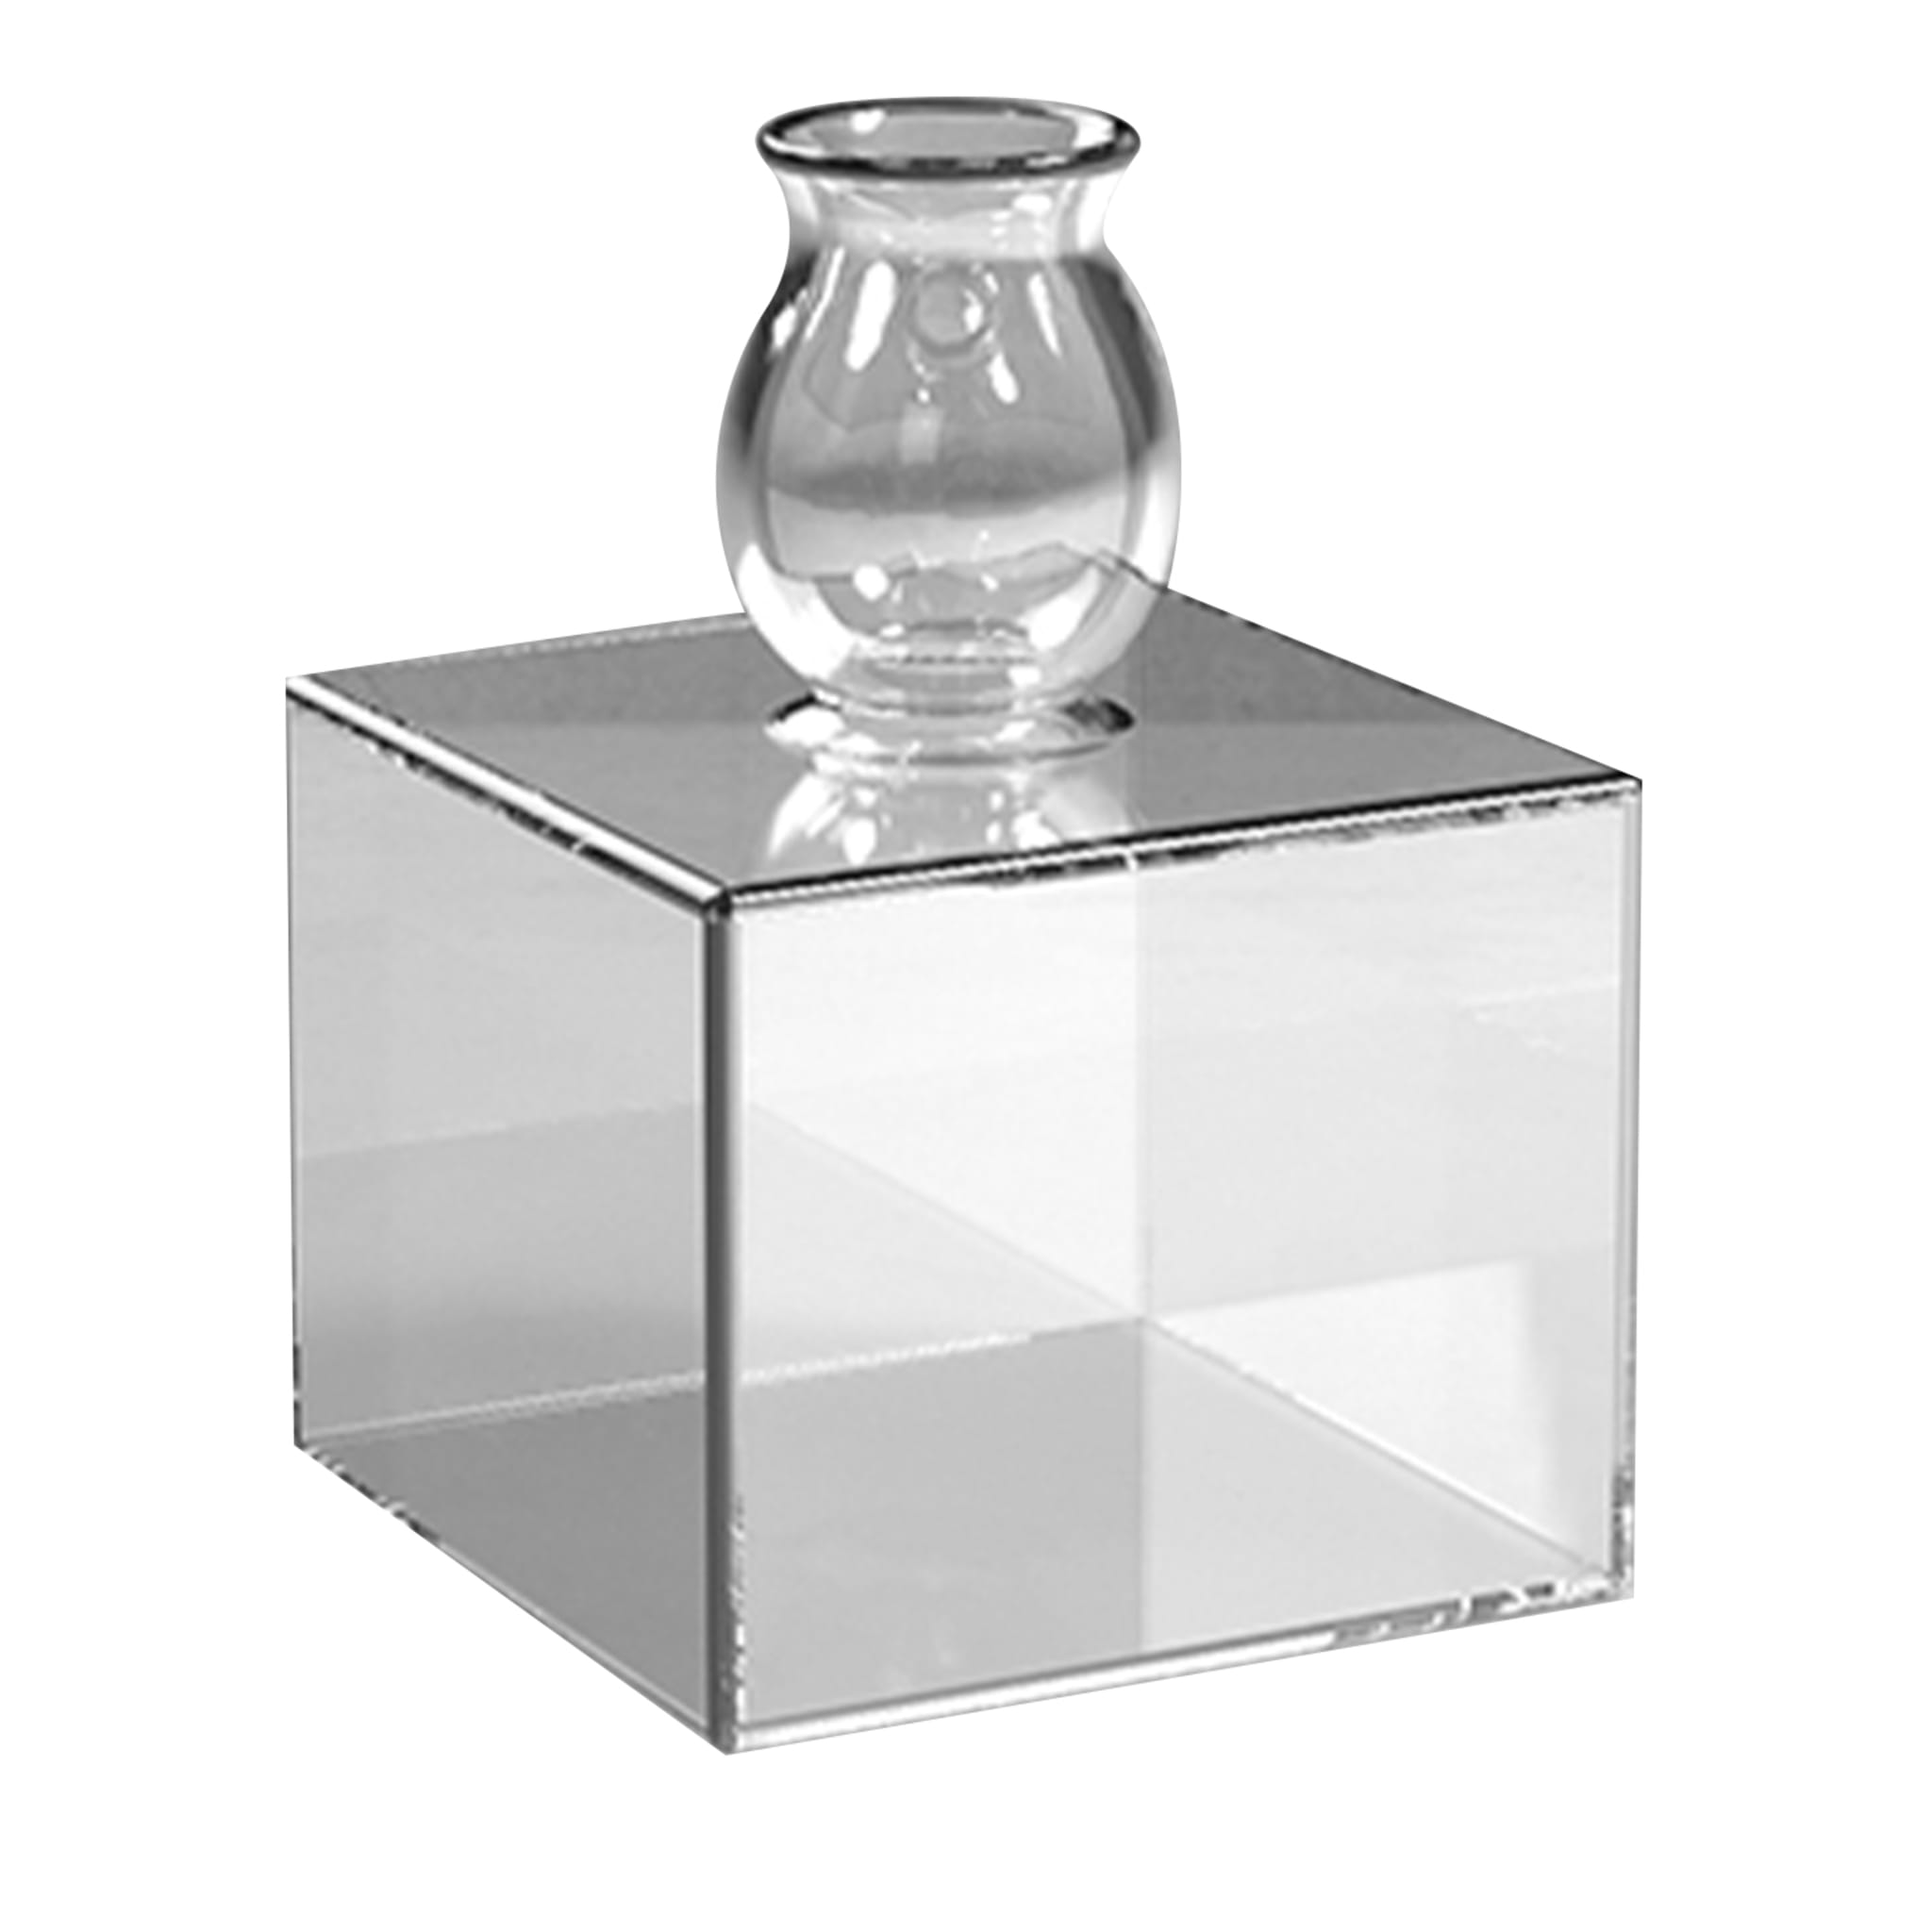 Milo Square-Based Transparent Vase by Quaglio Simonelli - Main view